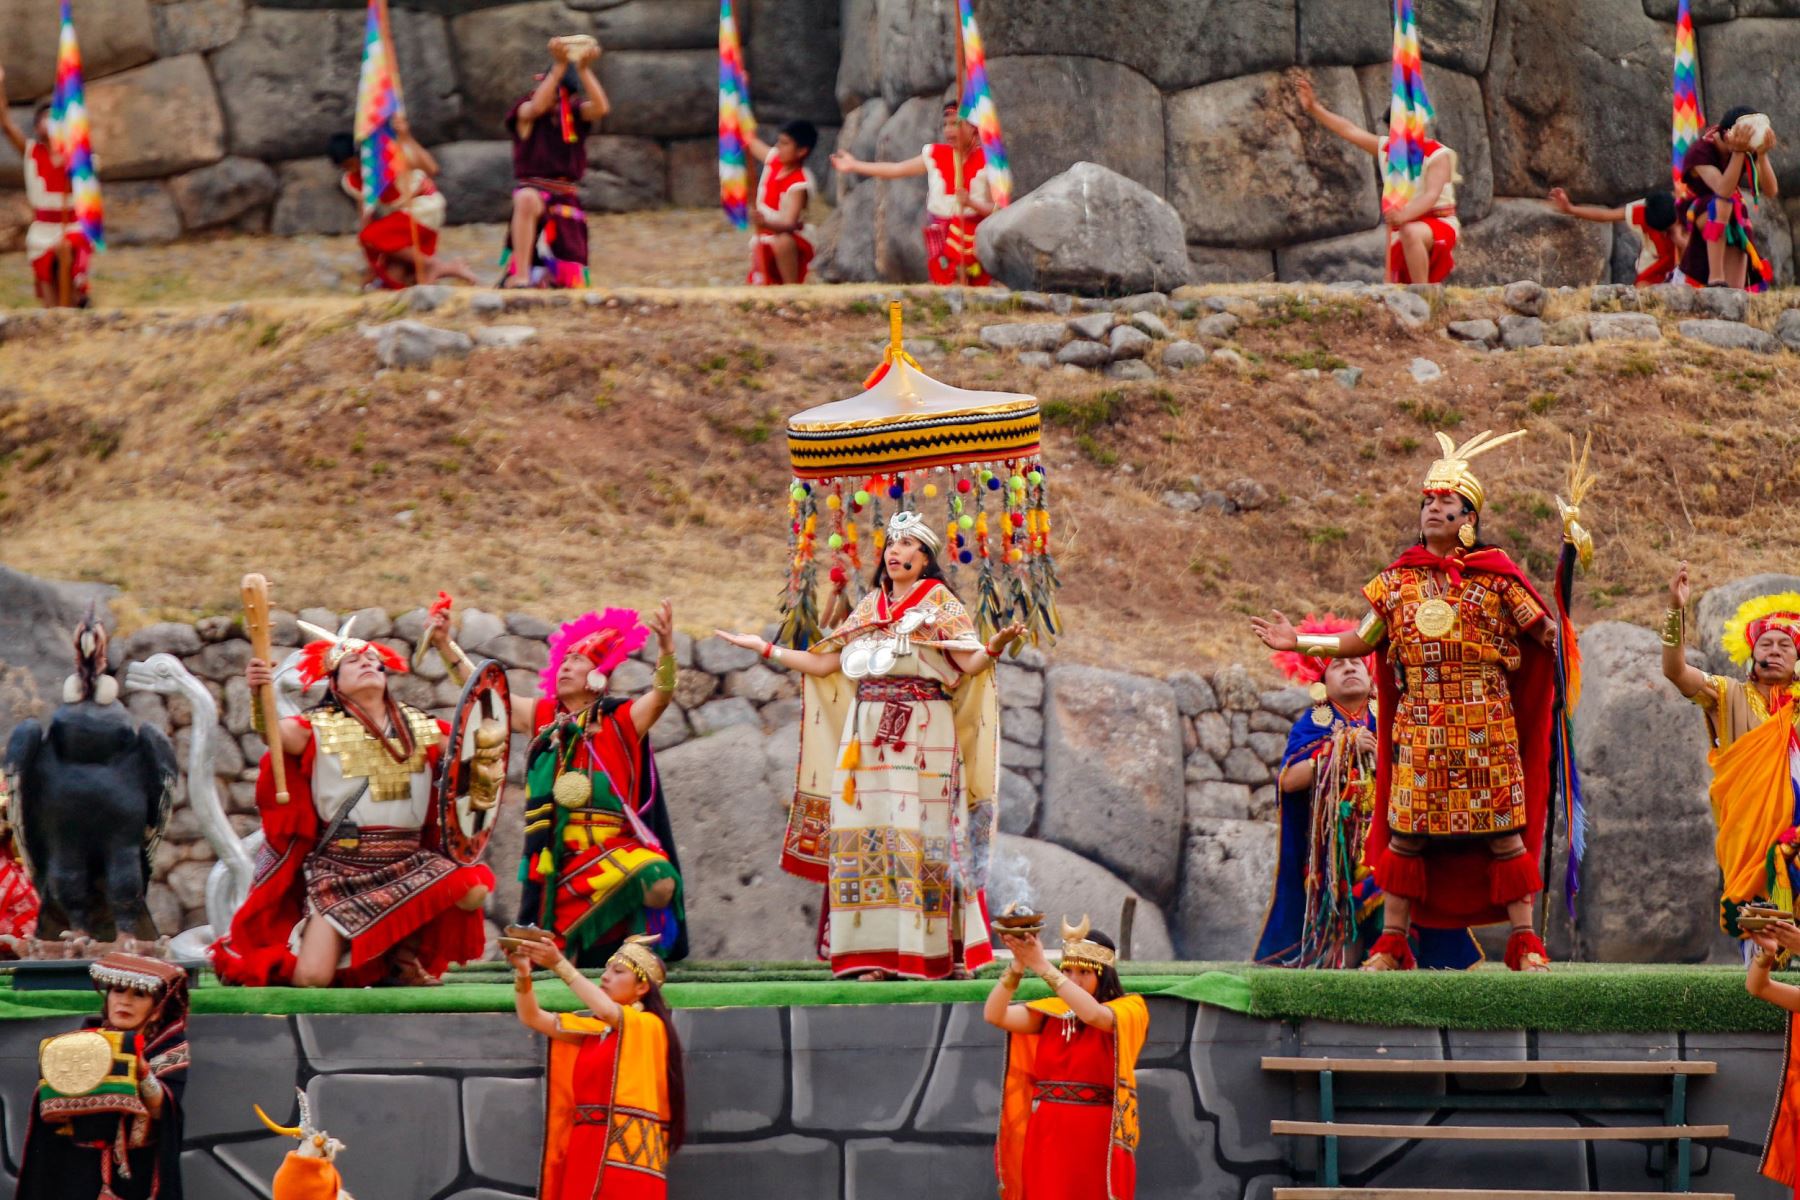 Resulta difícil explicar la majestuosidad que representa el Cusco. Esta región reúne historia ancestral, modernidad y aventura con una mística que envuelve desde la Plaza de Armas cusqueña, pasando por monumentos emblemáticos como Sacsayhuamán y Coricancha, hasta lugares más alejados como Tambomachay.
Foto: Alejandro Delgado T.